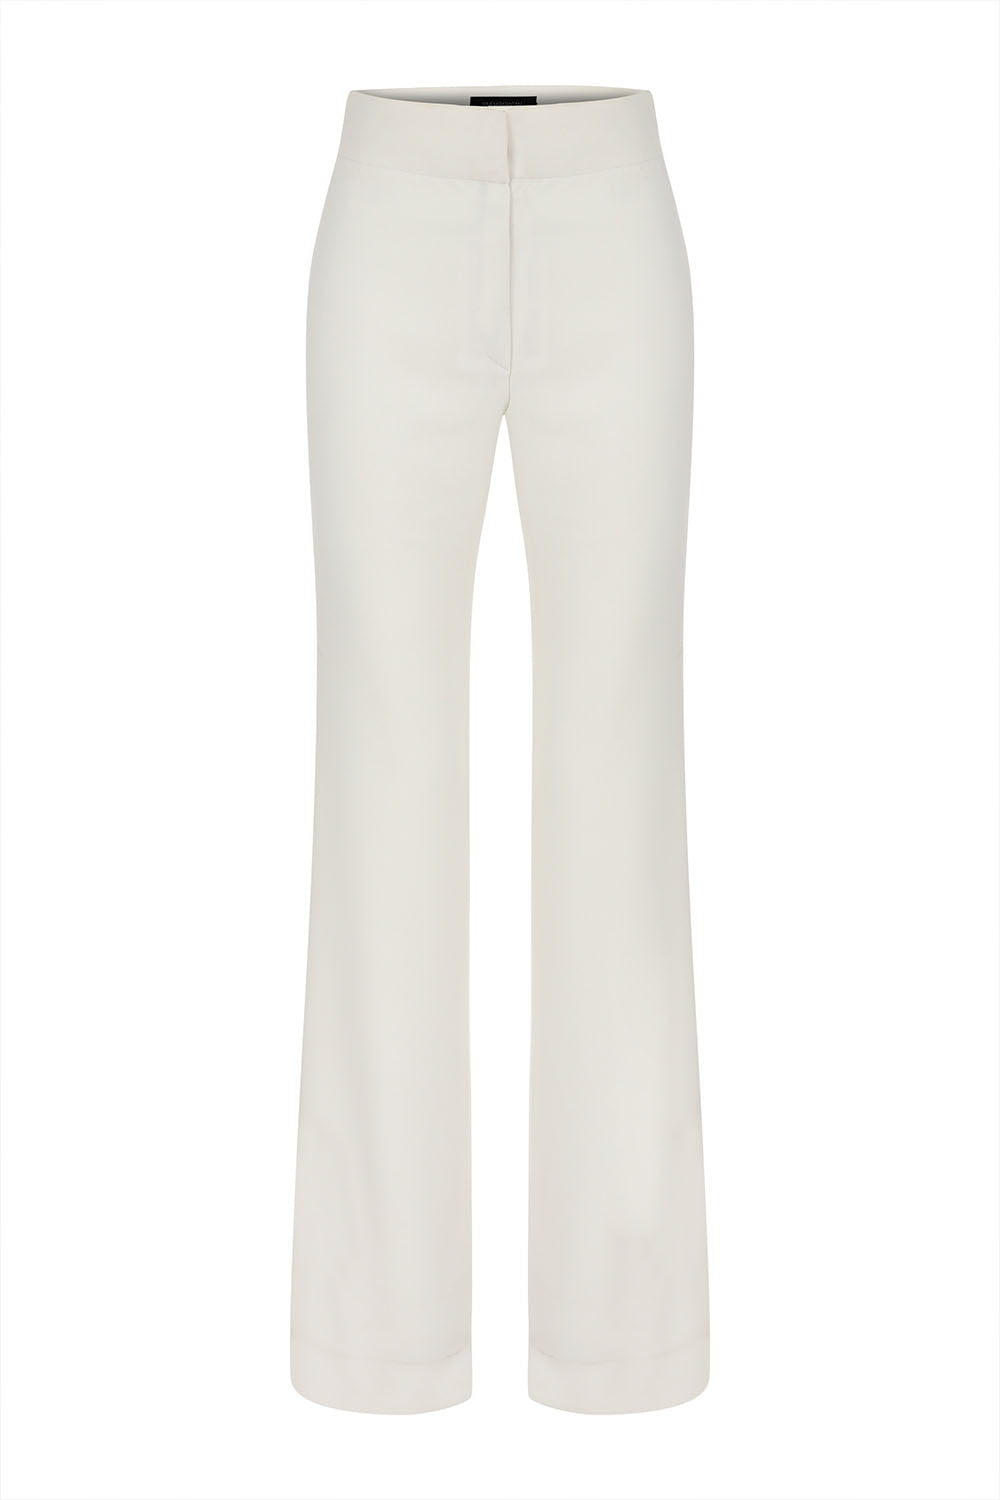 Sinem Babacan - Zayıf Gösteren Payet Garnili Pantolon Beyaz Dekupe Ön İmaj 1